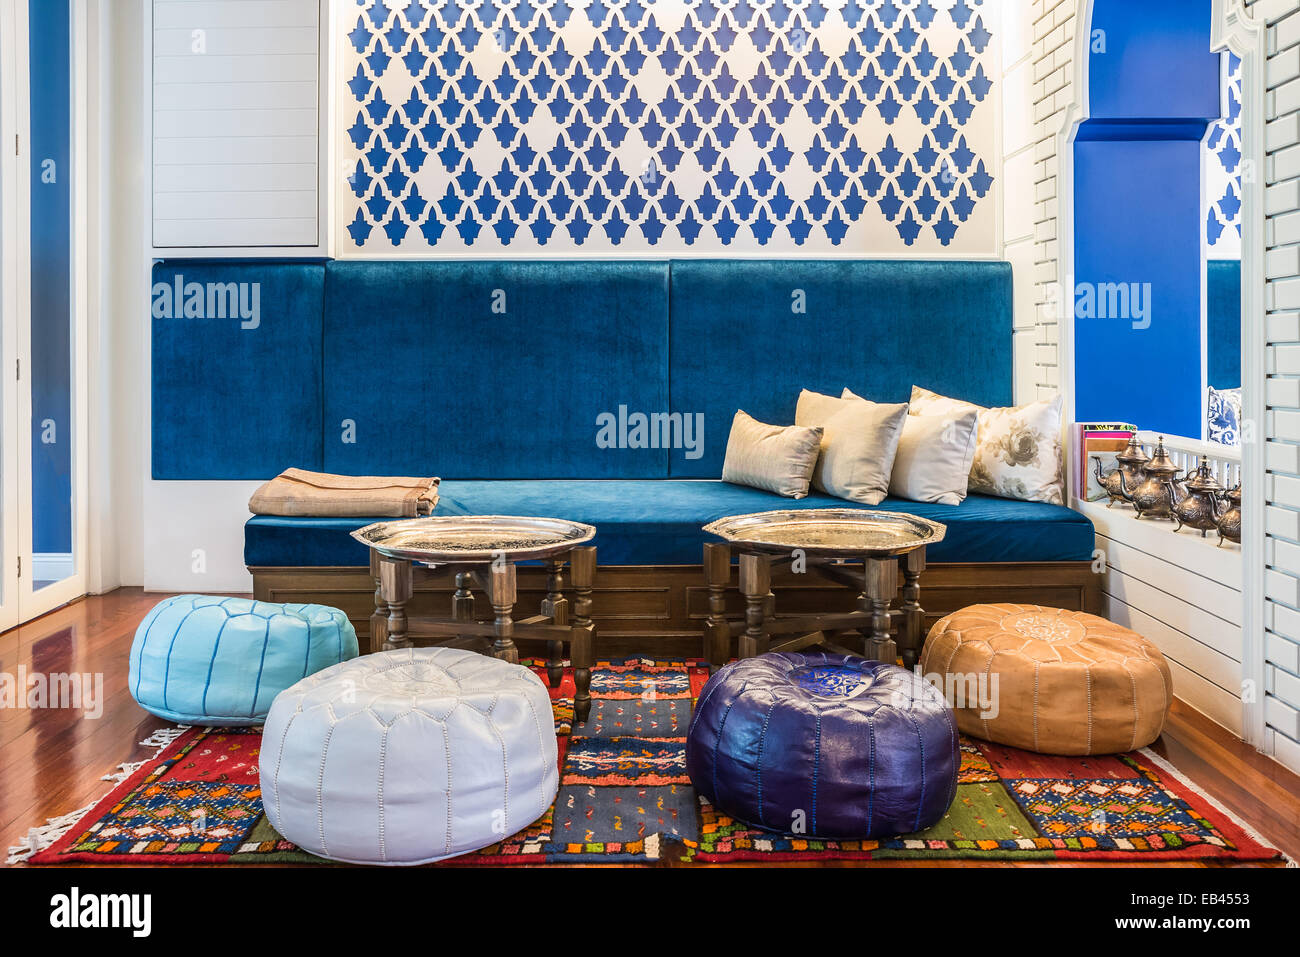 Salon de style marocain Banque D'Images